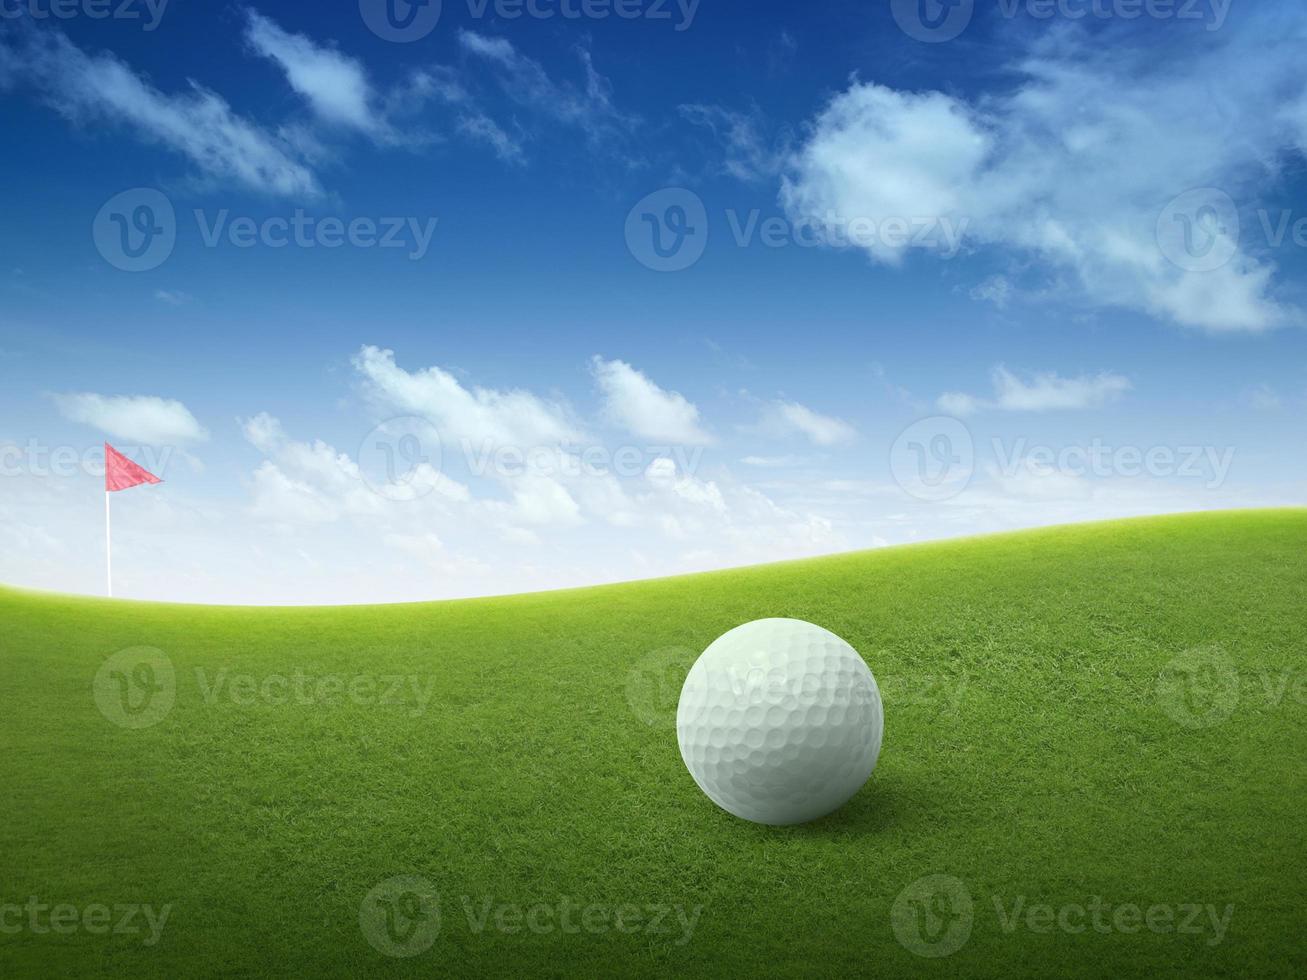 fechar a bola de golfe no campo de grama verde e bandeira de golfe vermelha no fairway verde com lindo céu azul foto